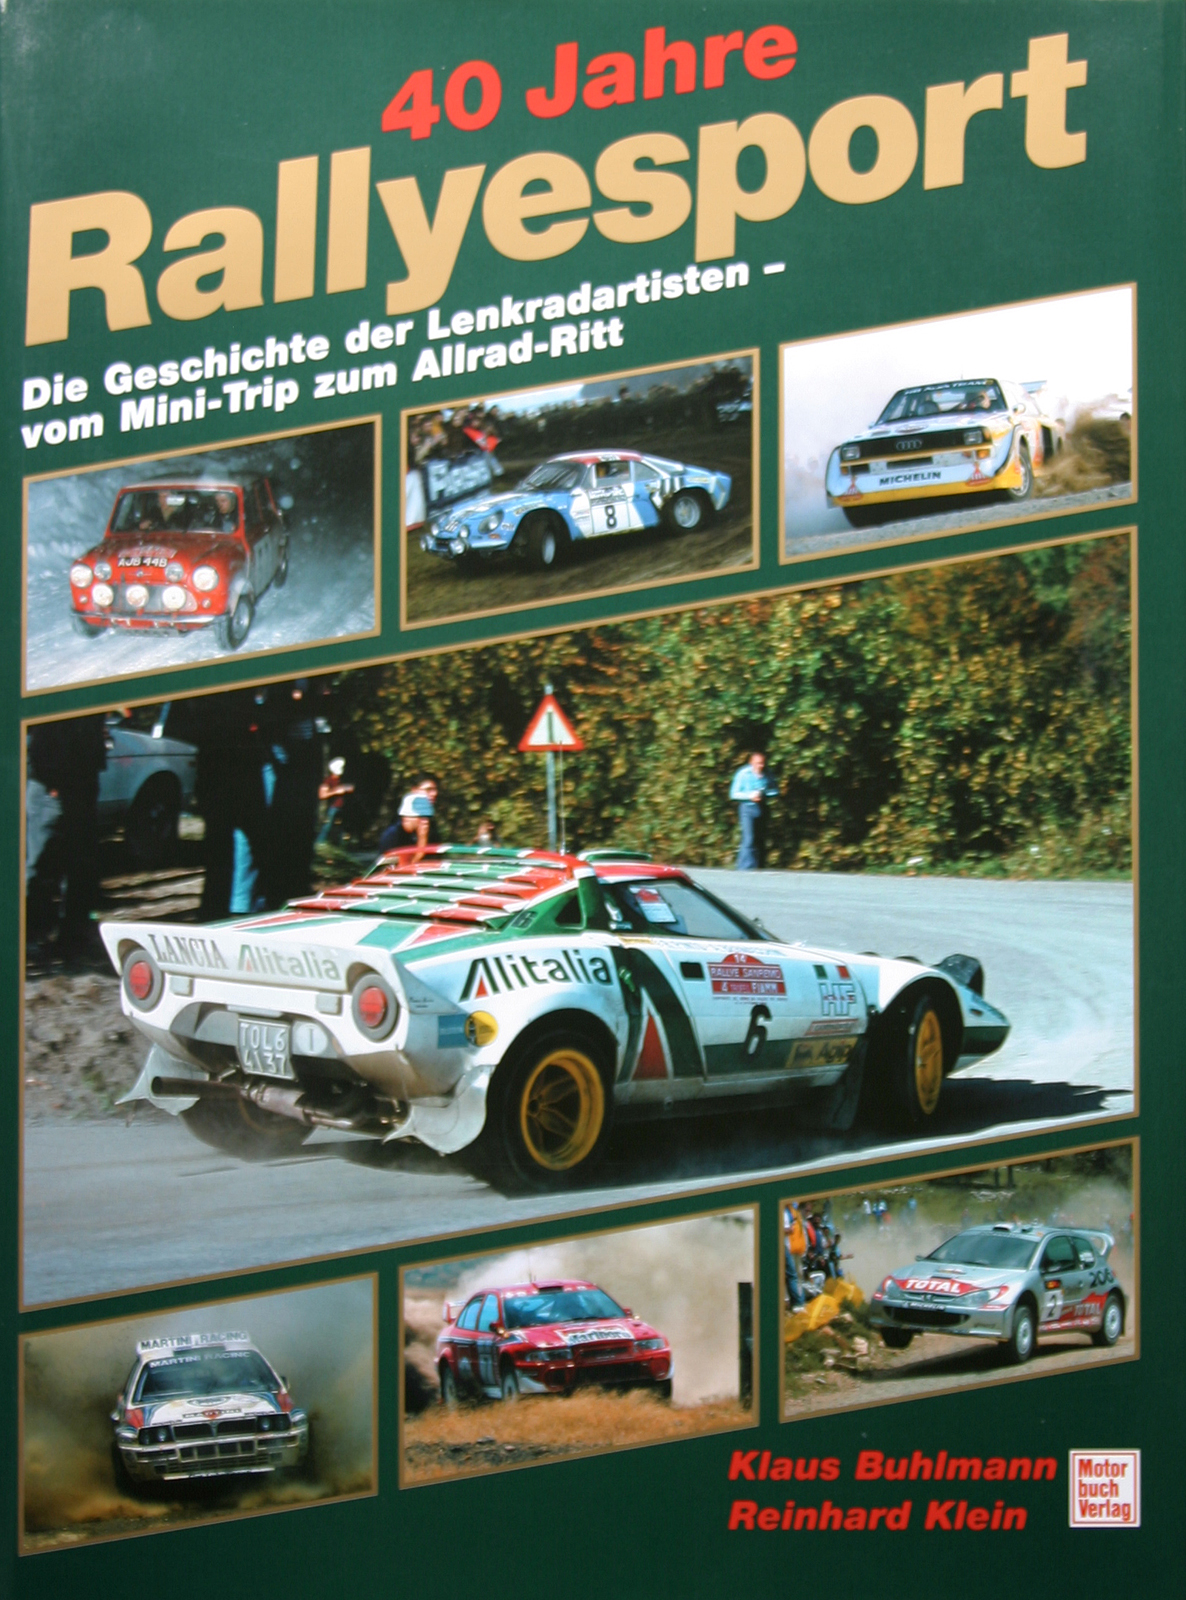 40 Jahre Rallyesport